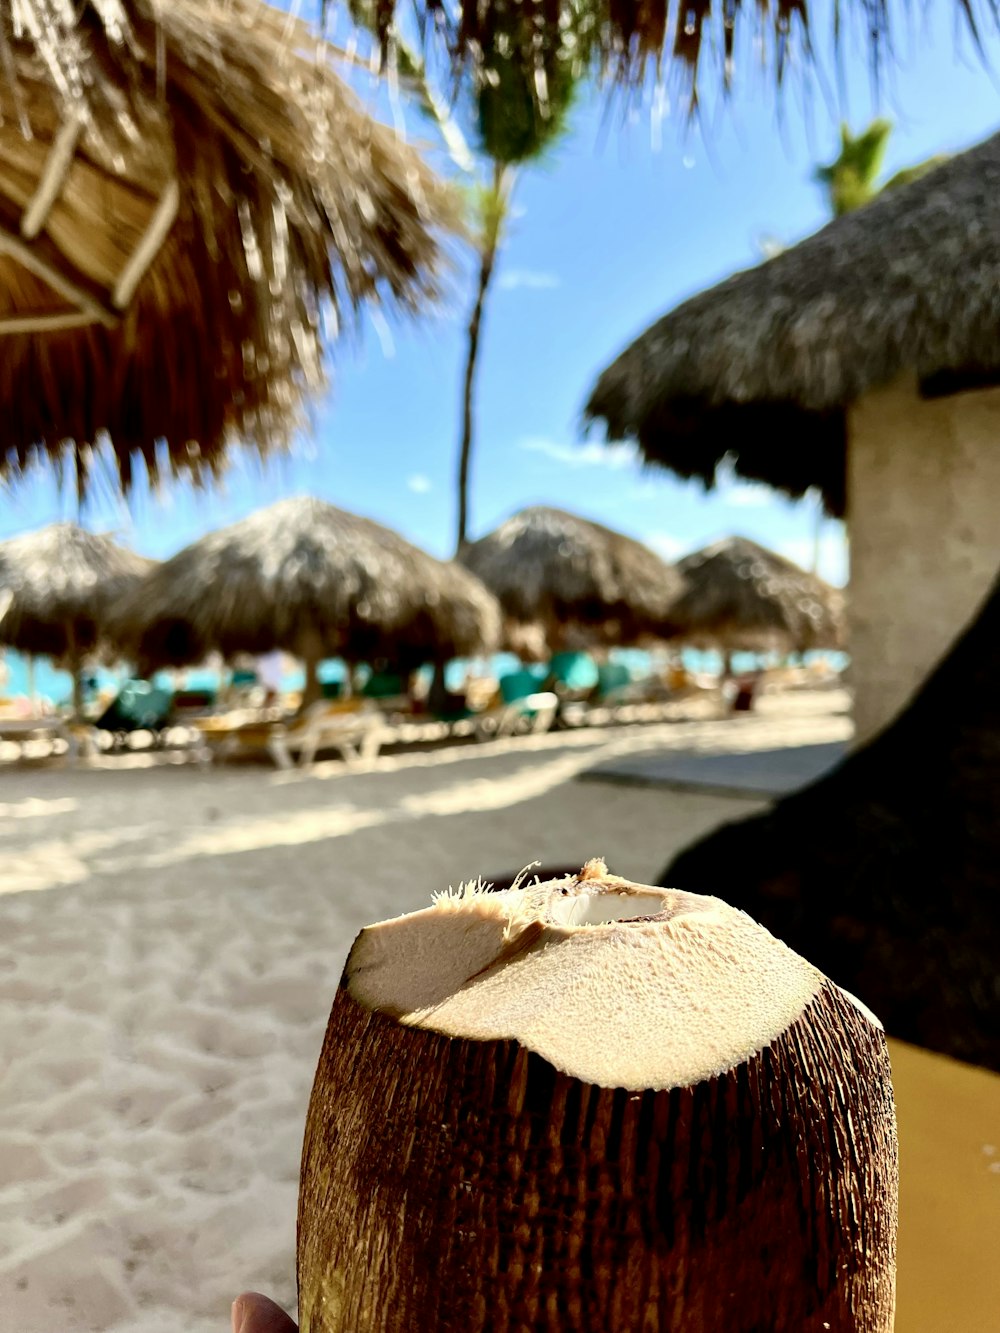 모래 사장 위에 앉아있는 코코넛